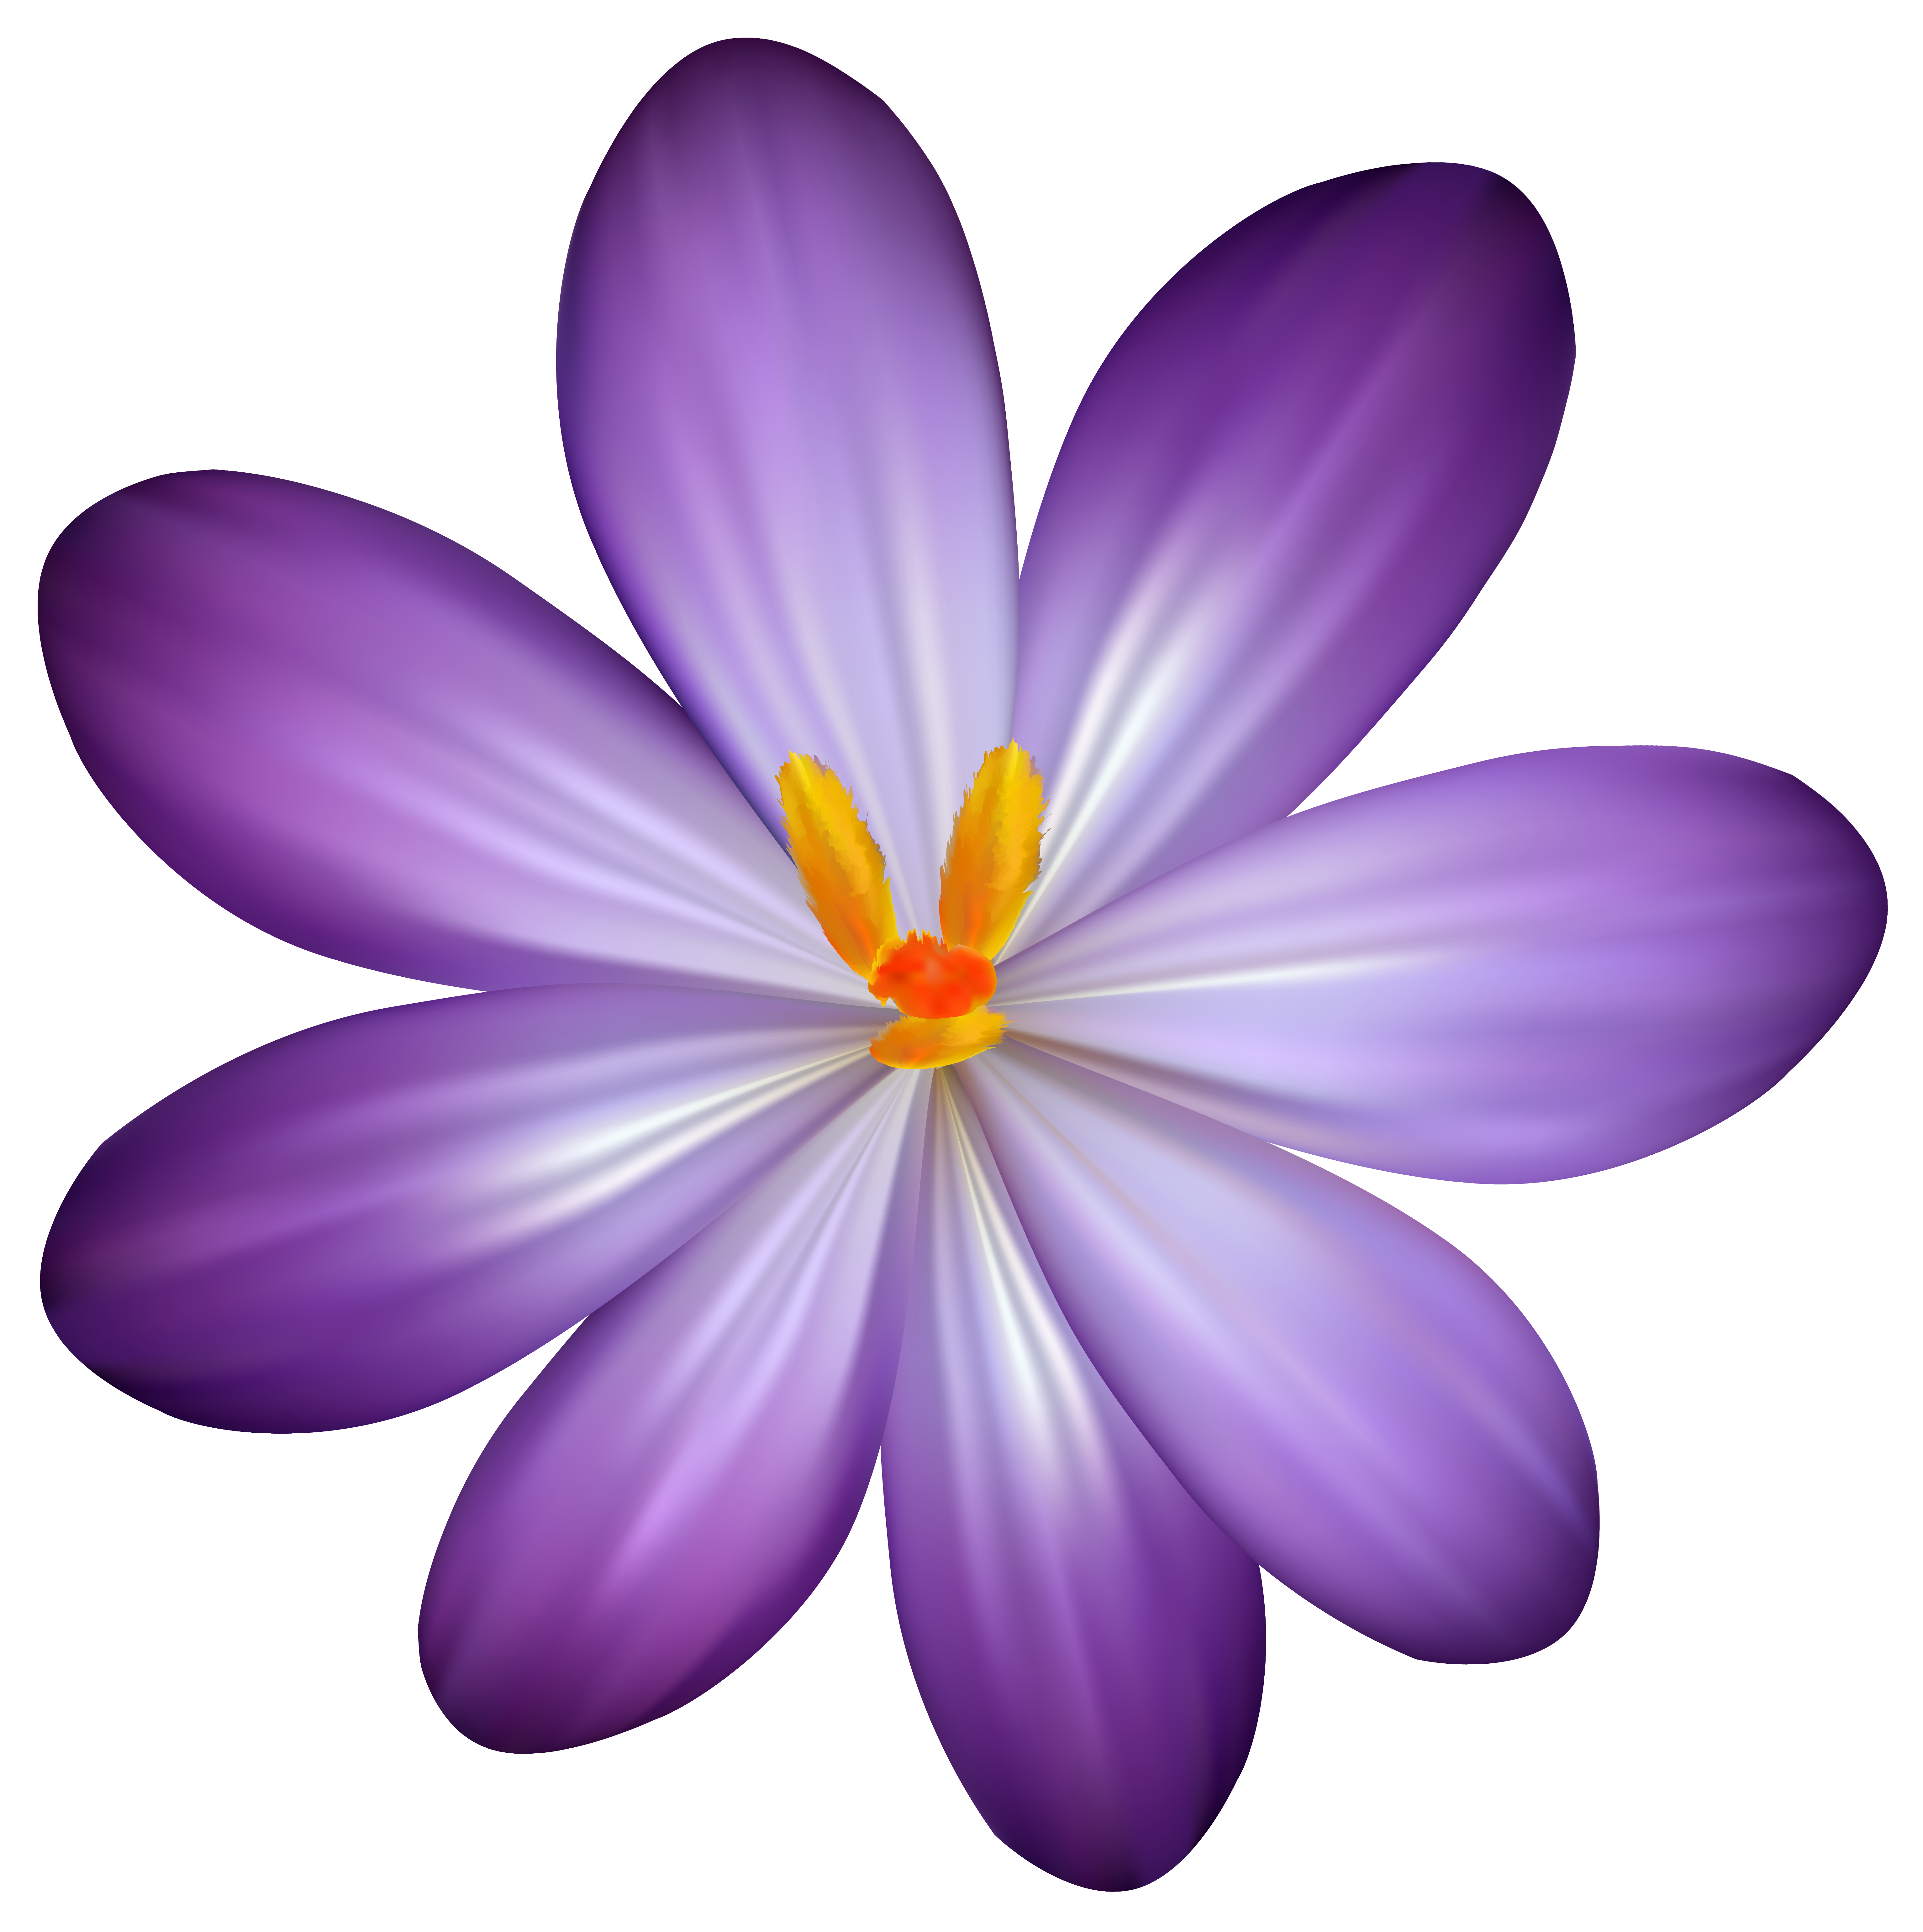 Purple Crocus Flower PNG Clipart Image 